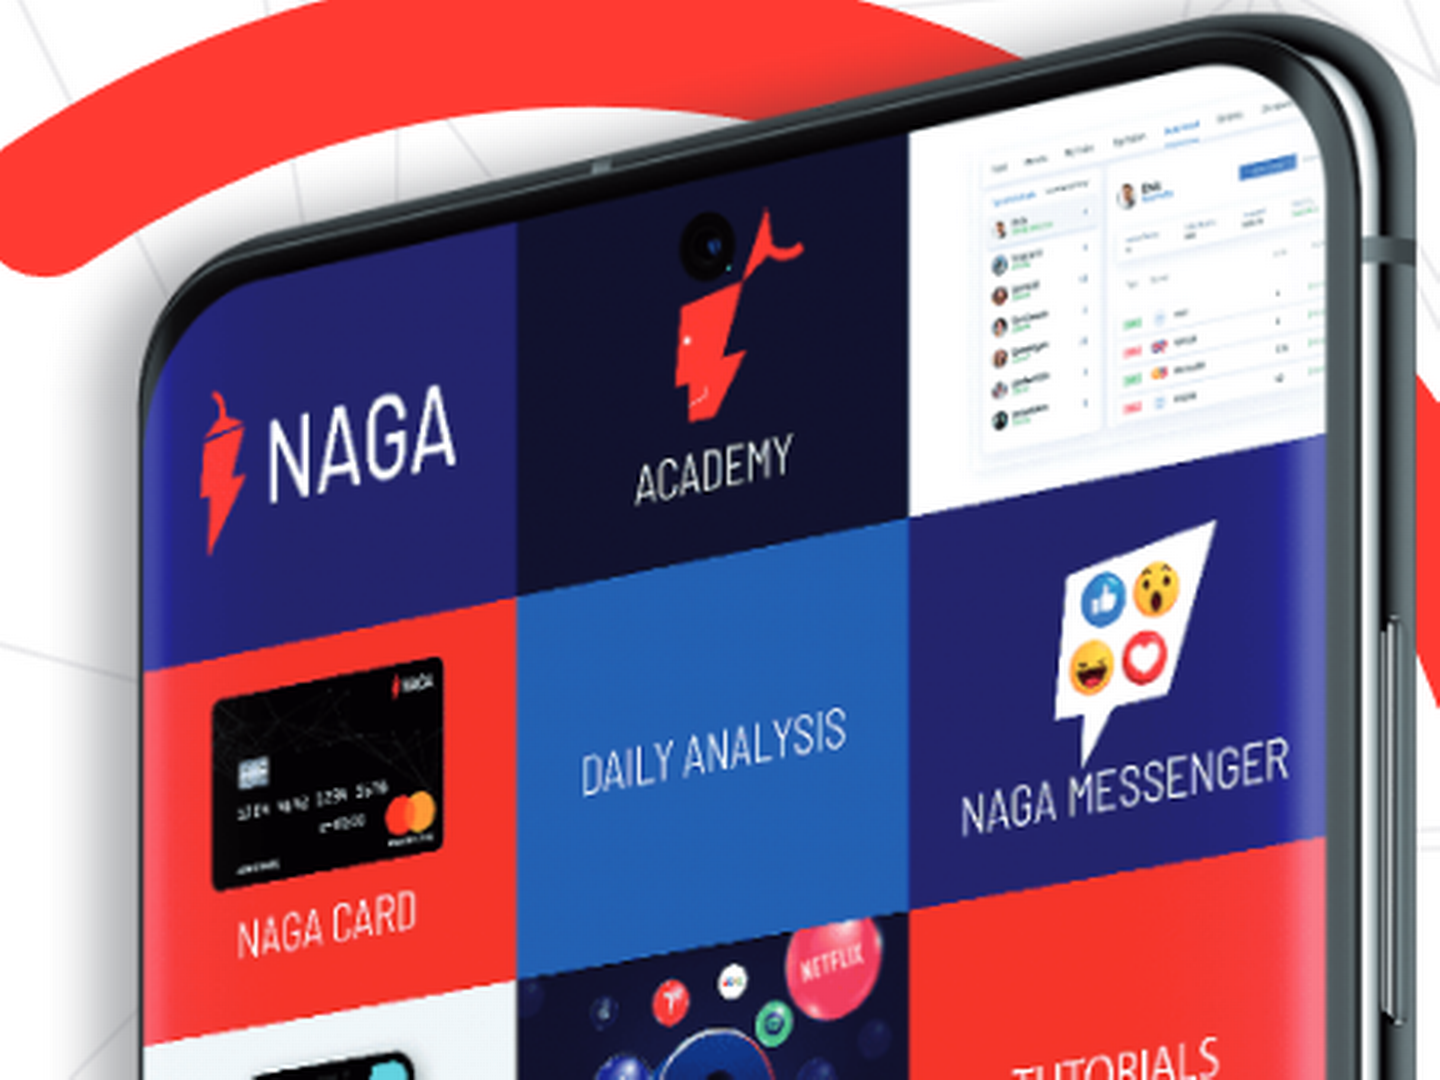 Naga-Dienste auf einem Smartphone, dargestellt im Geschäftsbericht 2019. | Foto: Screenshot FinanzBusiness